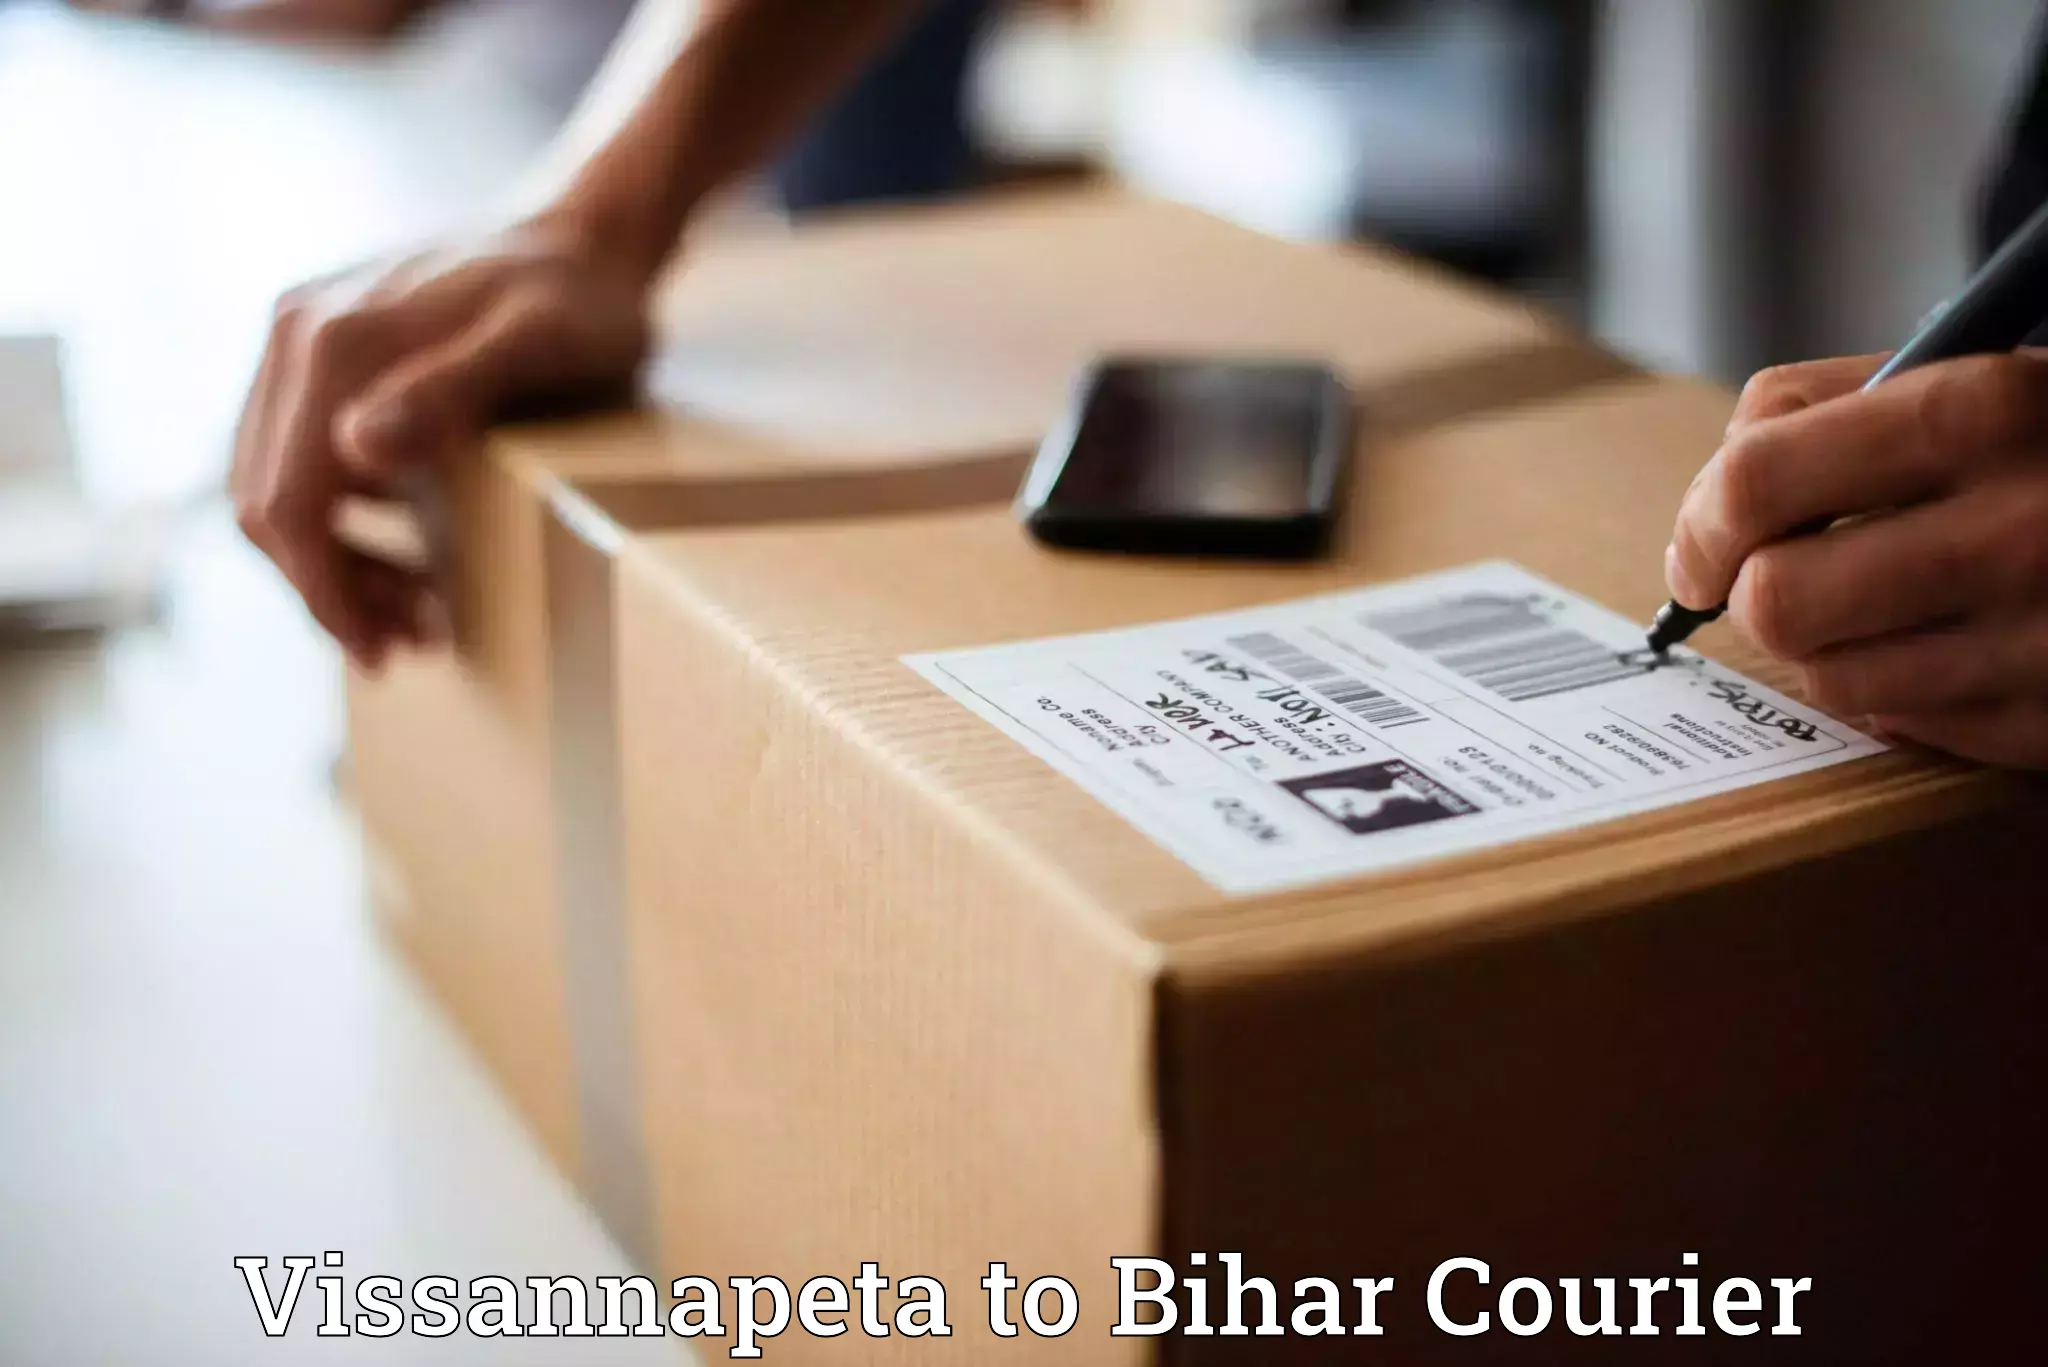 Efficient cargo handling Vissannapeta to Bihar